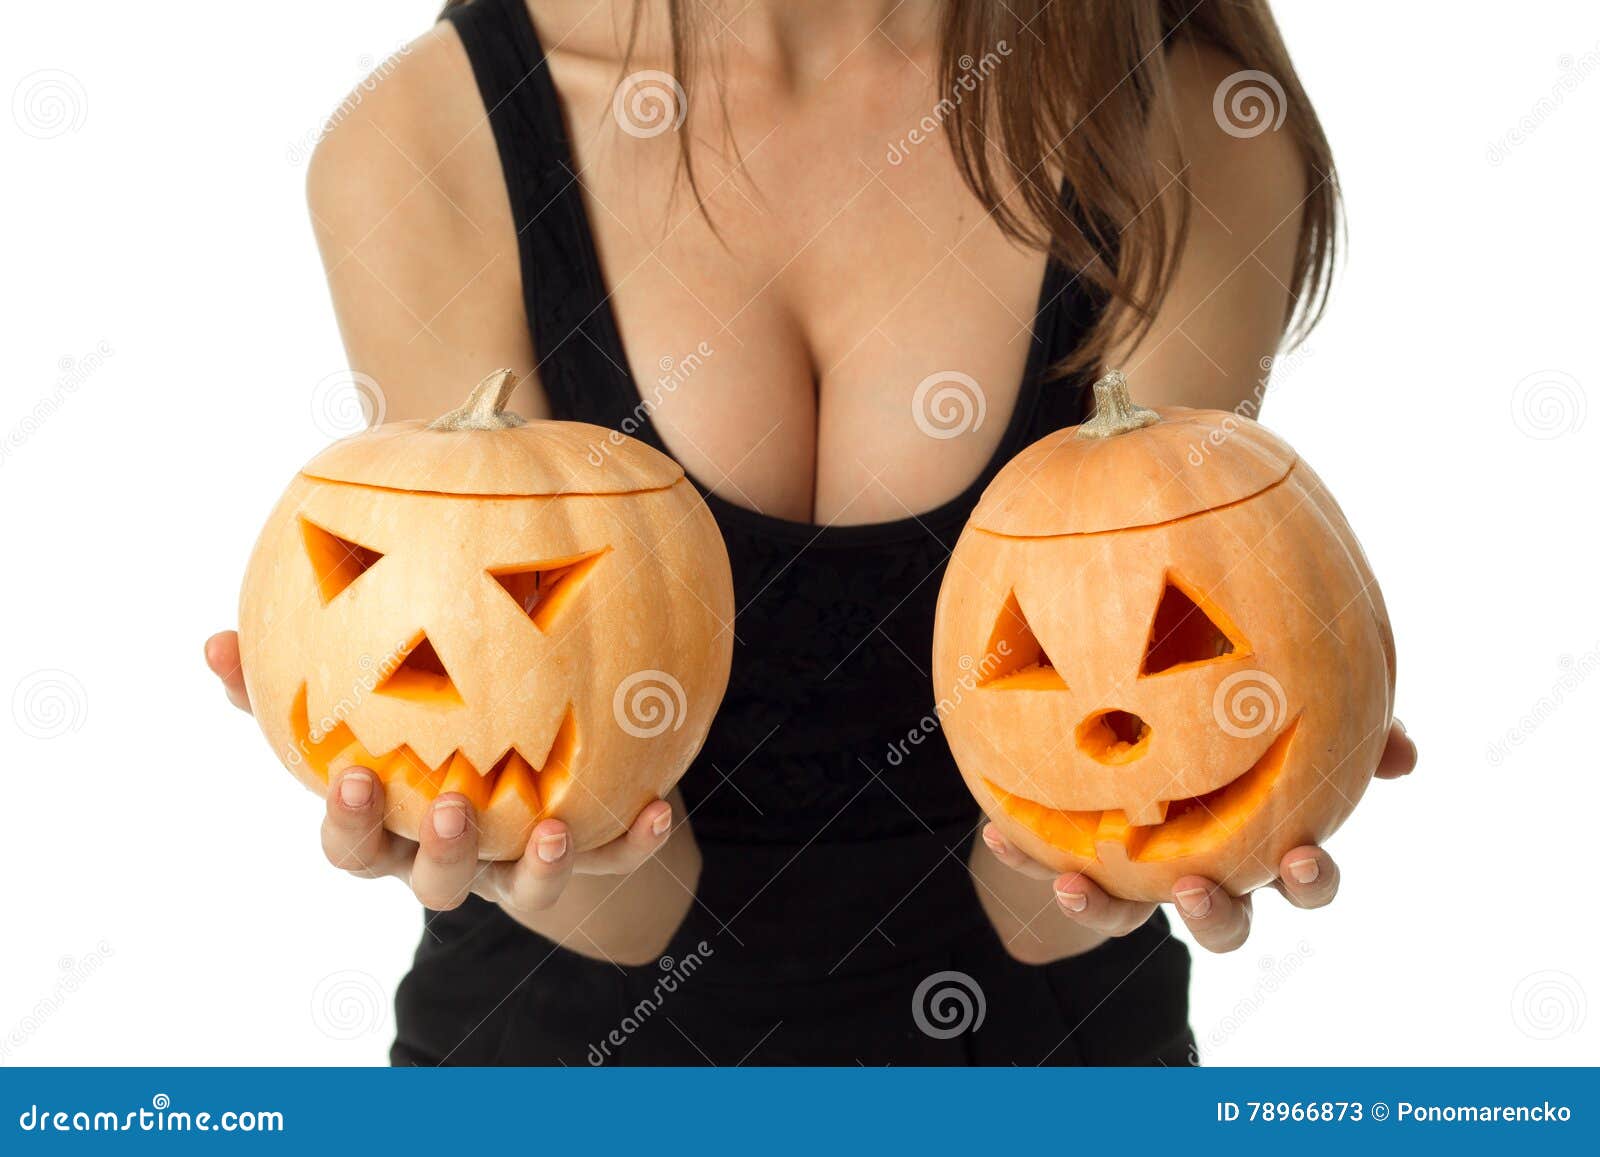 Boobs halloween